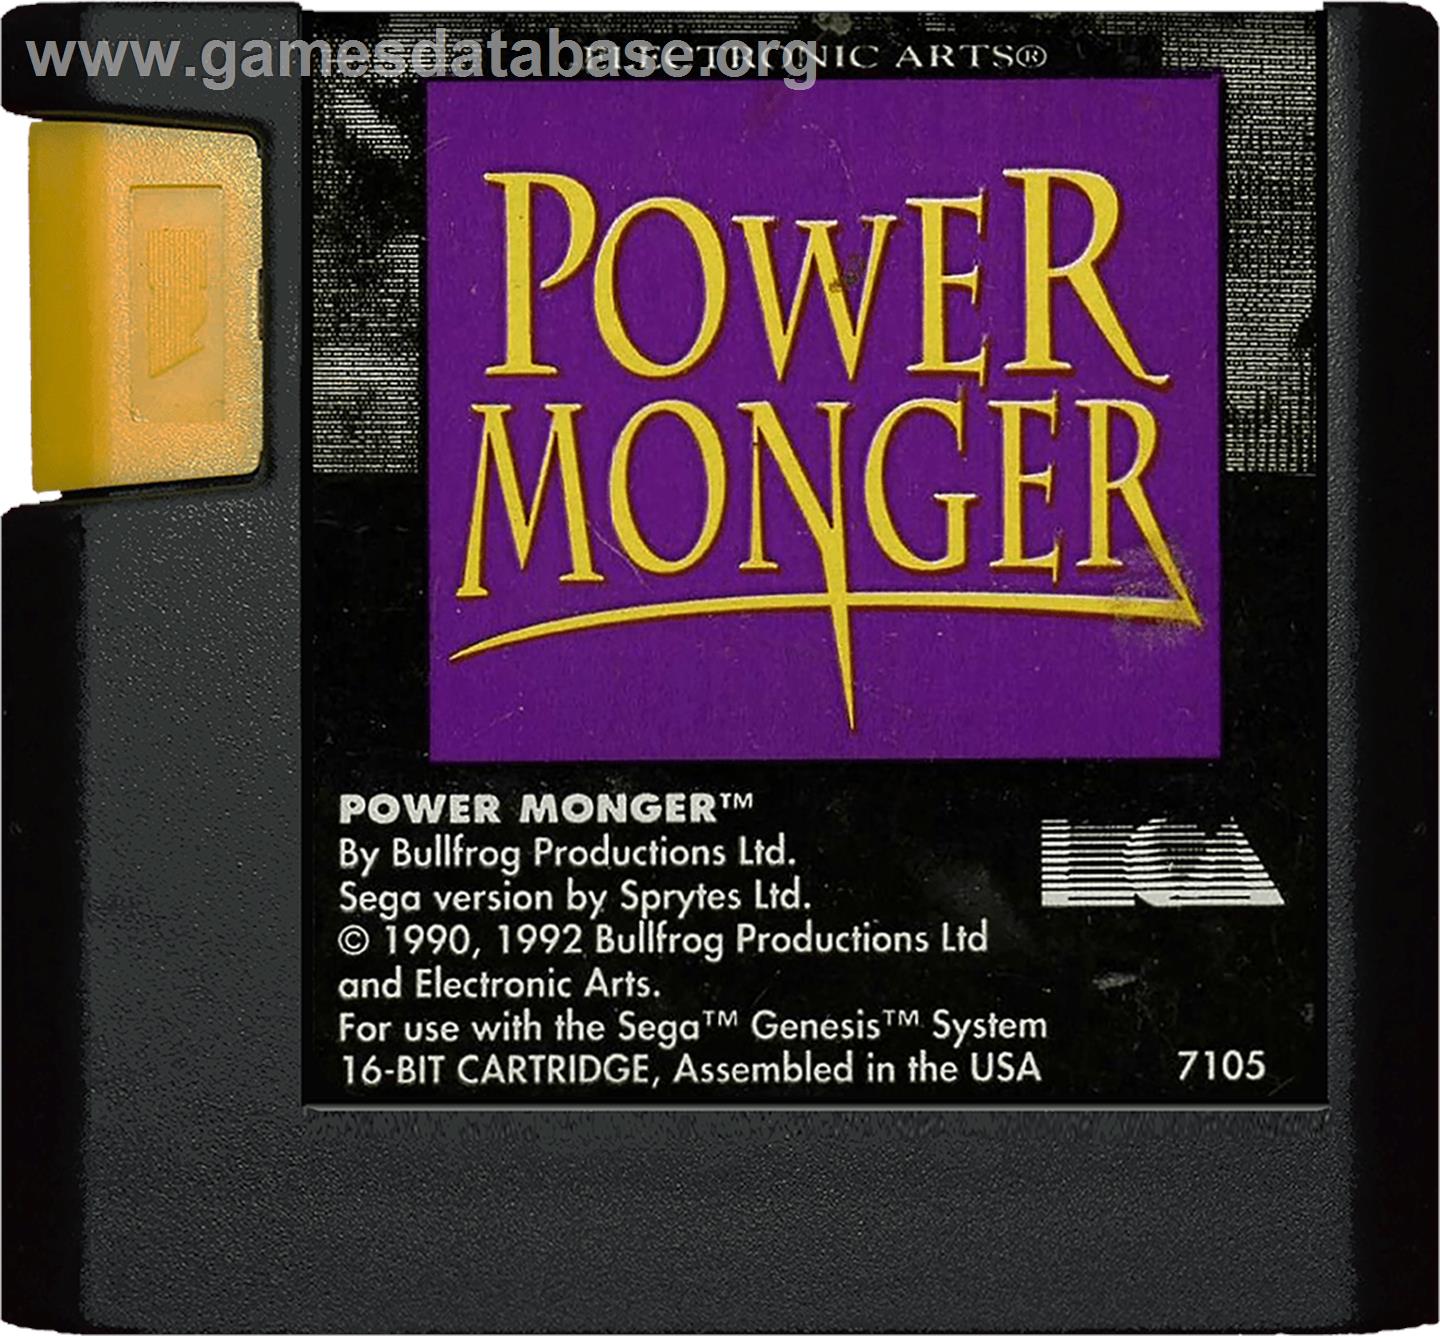 Powermonger - Sega Genesis - Artwork - Cartridge